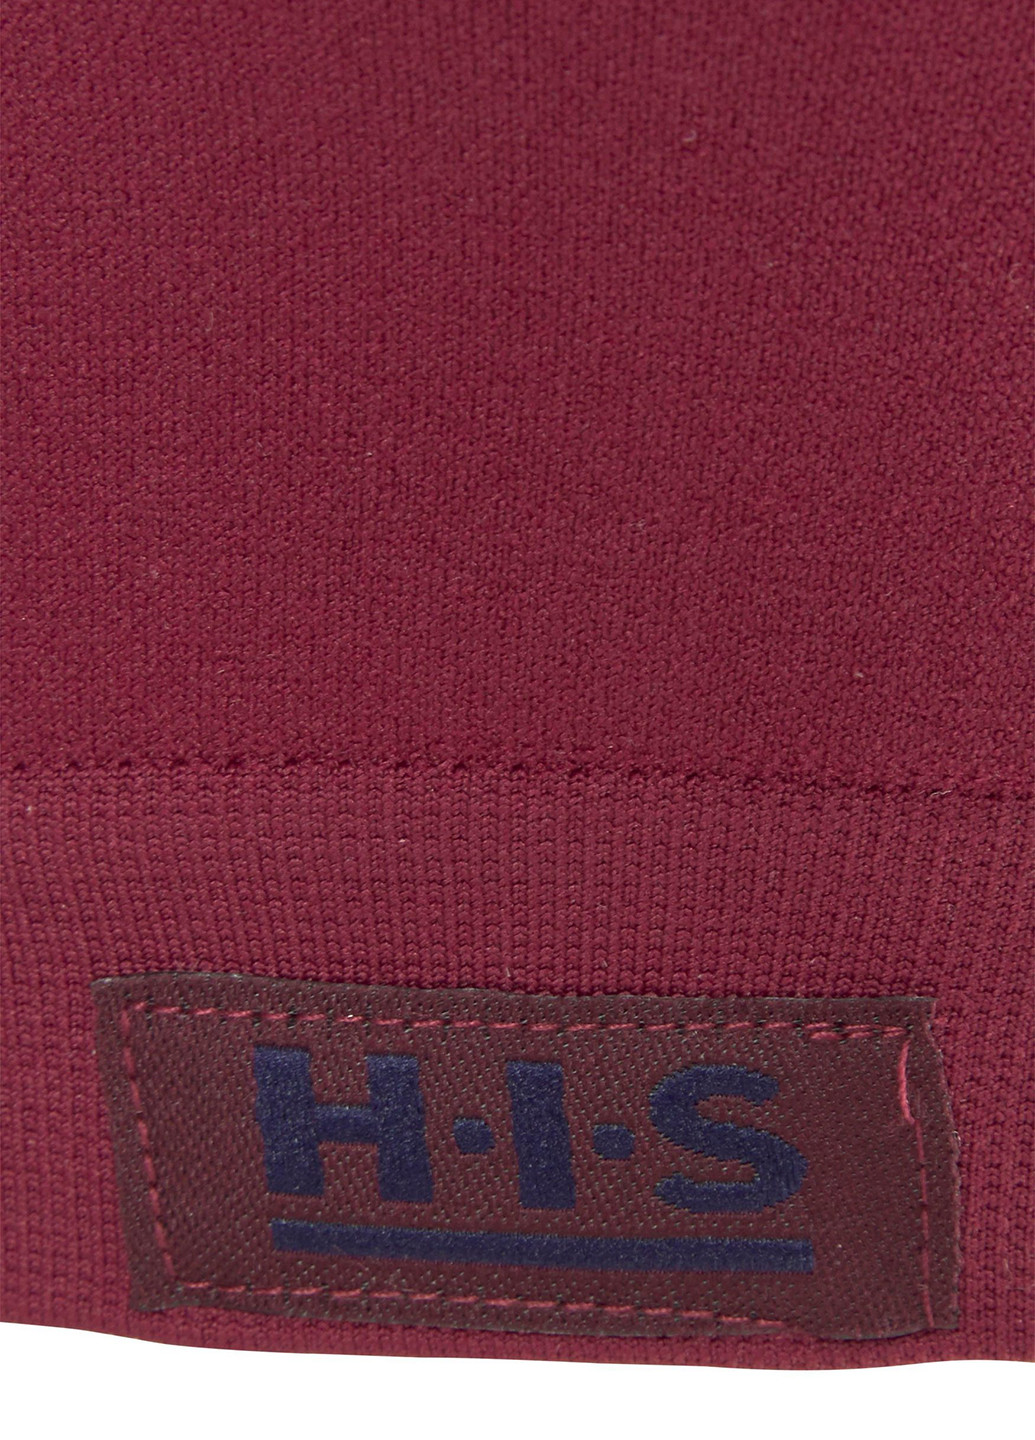 Бордовый топ бюстгальтер H.I.S. с косточками полиамид